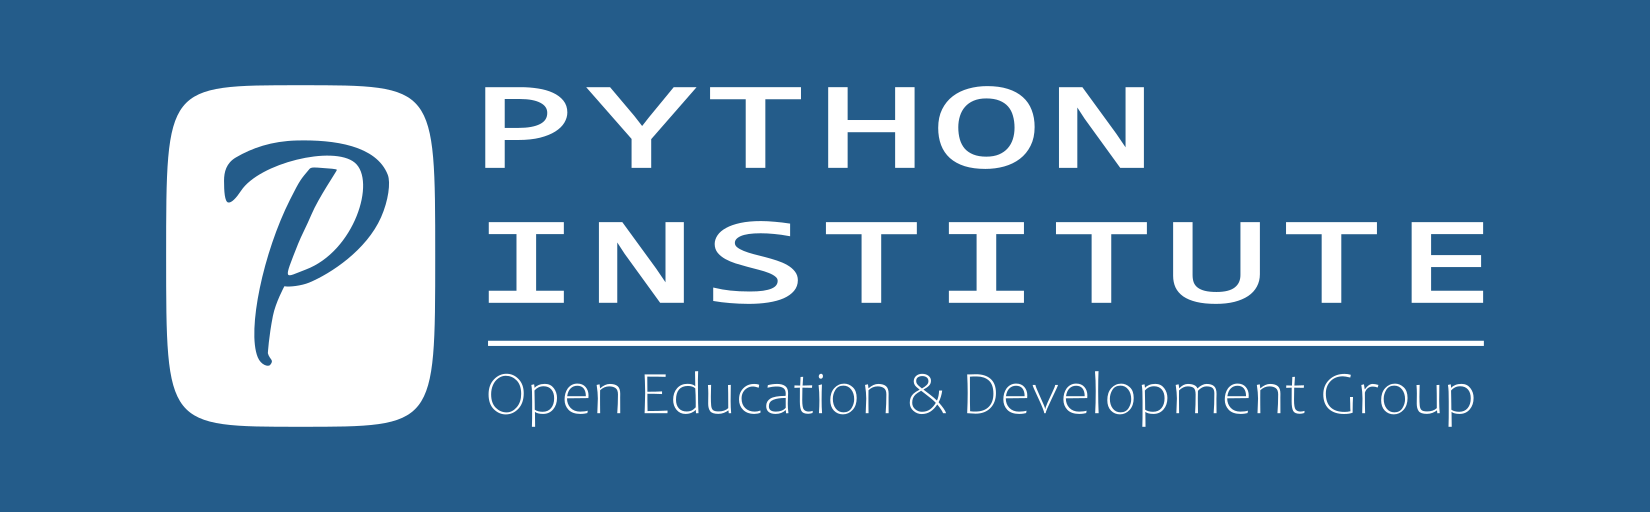 OpenEDG Python Institute